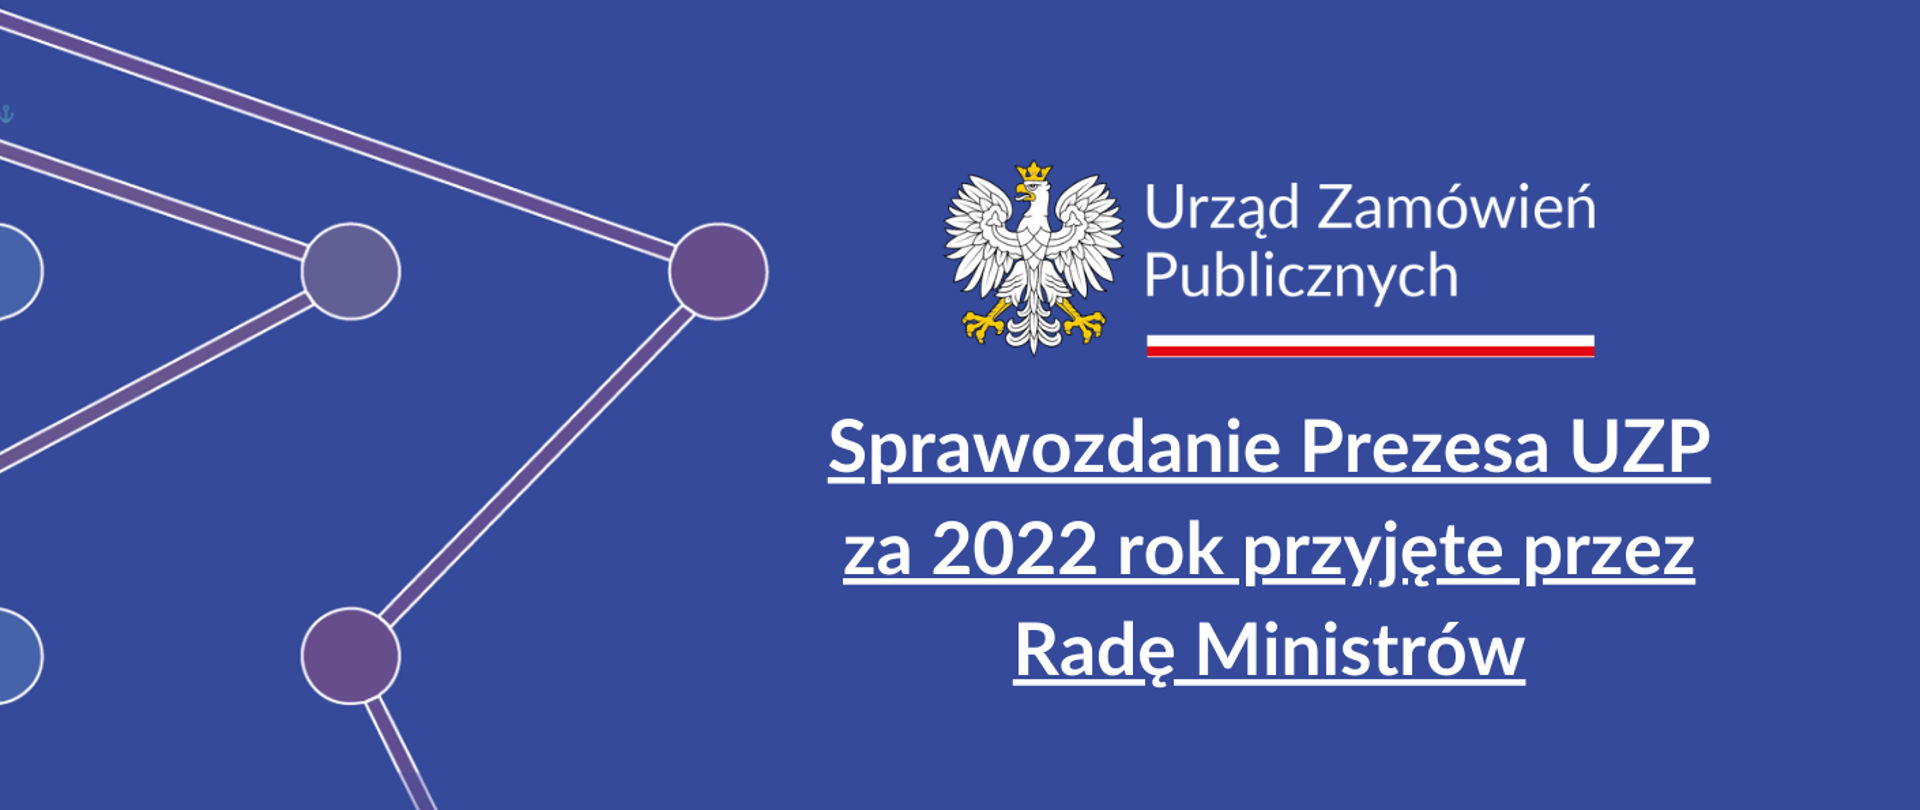 Sprawozdanie Prezesa UZP za 2022 rok przyjęte przez Radę Ministrów